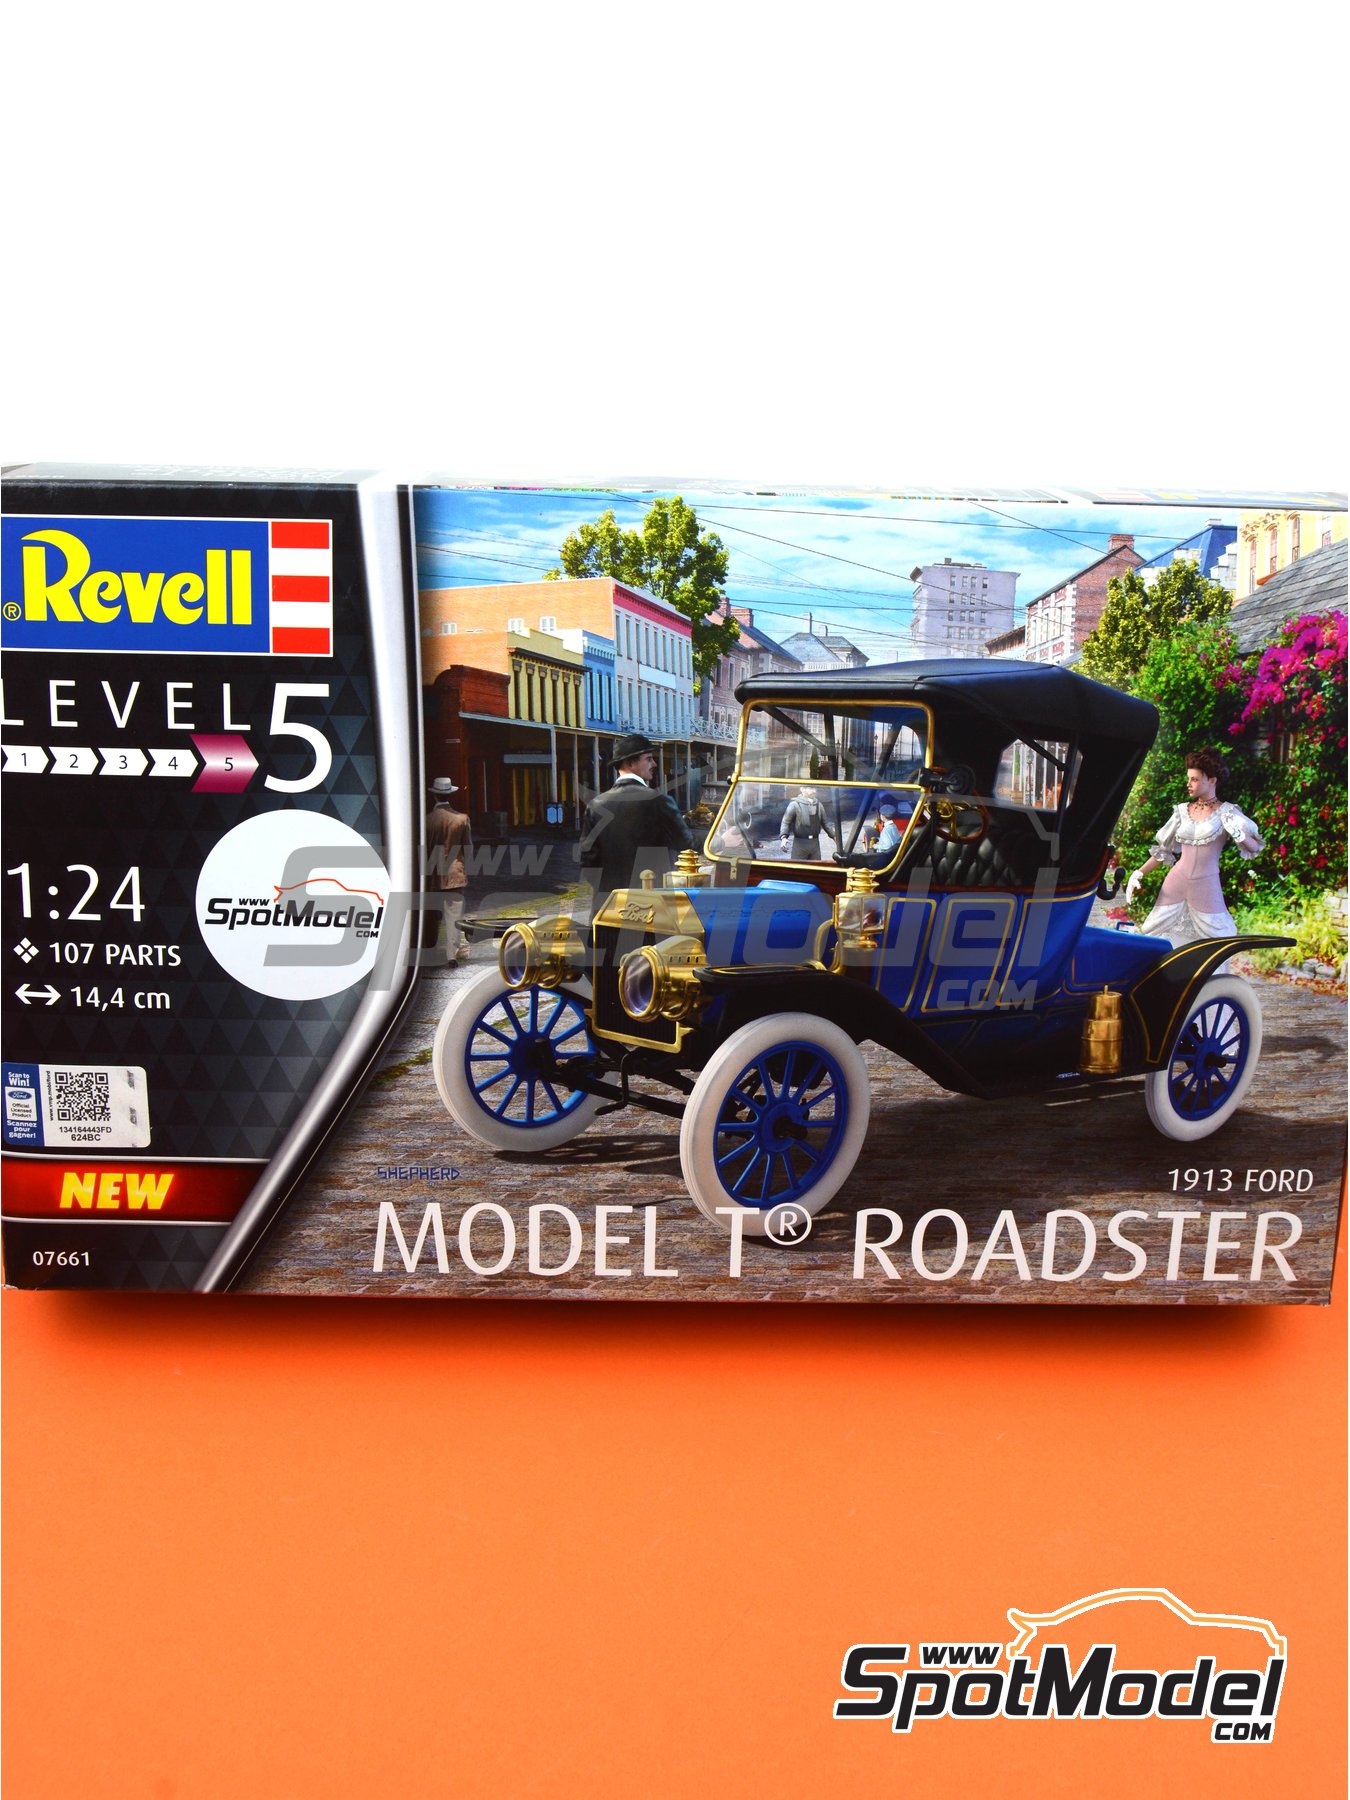 Revell 07661 Ford 1913 Model T Roadster Classic Car Plastic Model Kit 1:24